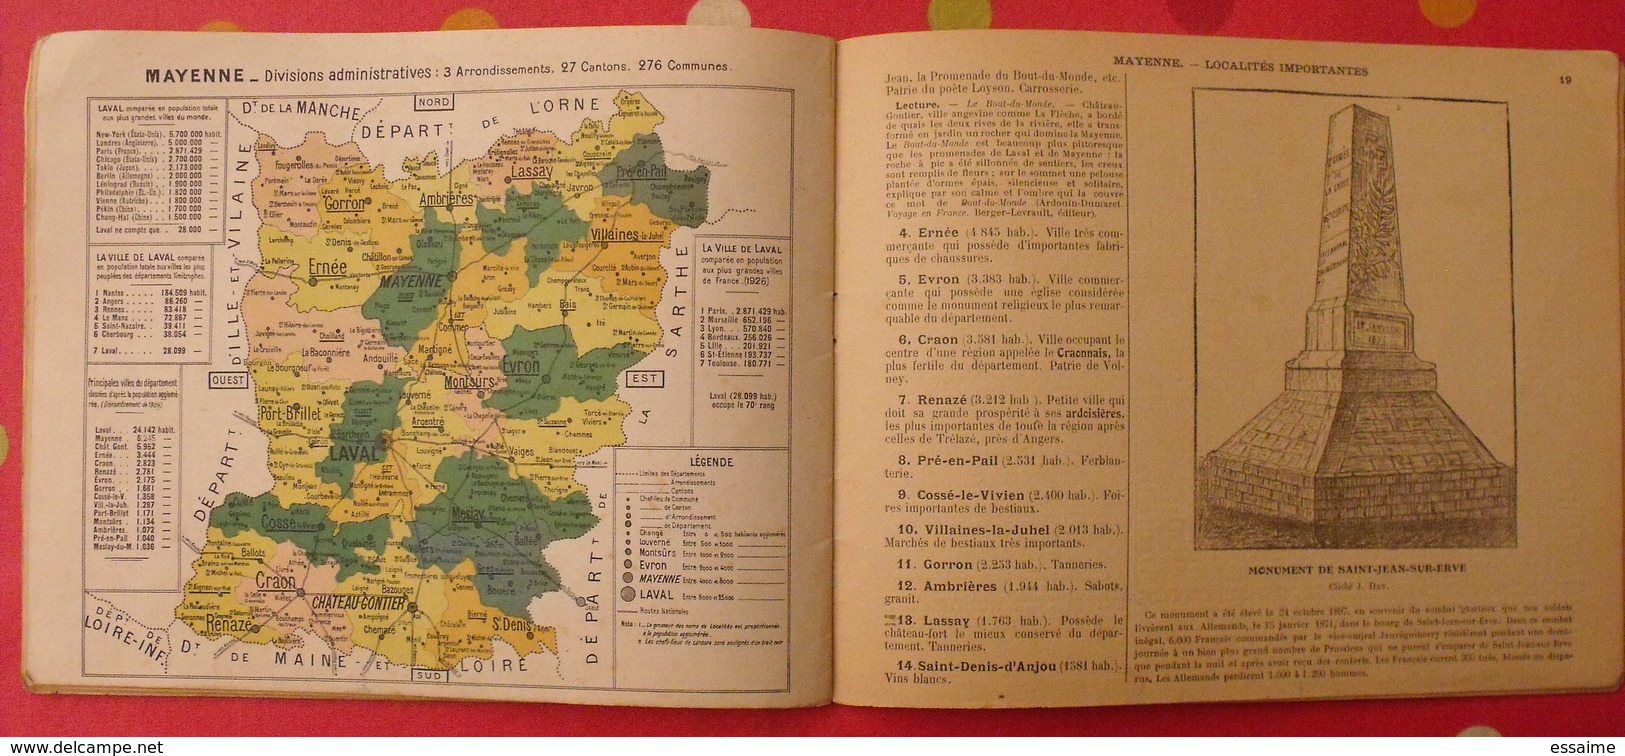 petite géographie de la mayenne. Laval Chateau-Gontier. Julien Hay. 1930. cartes